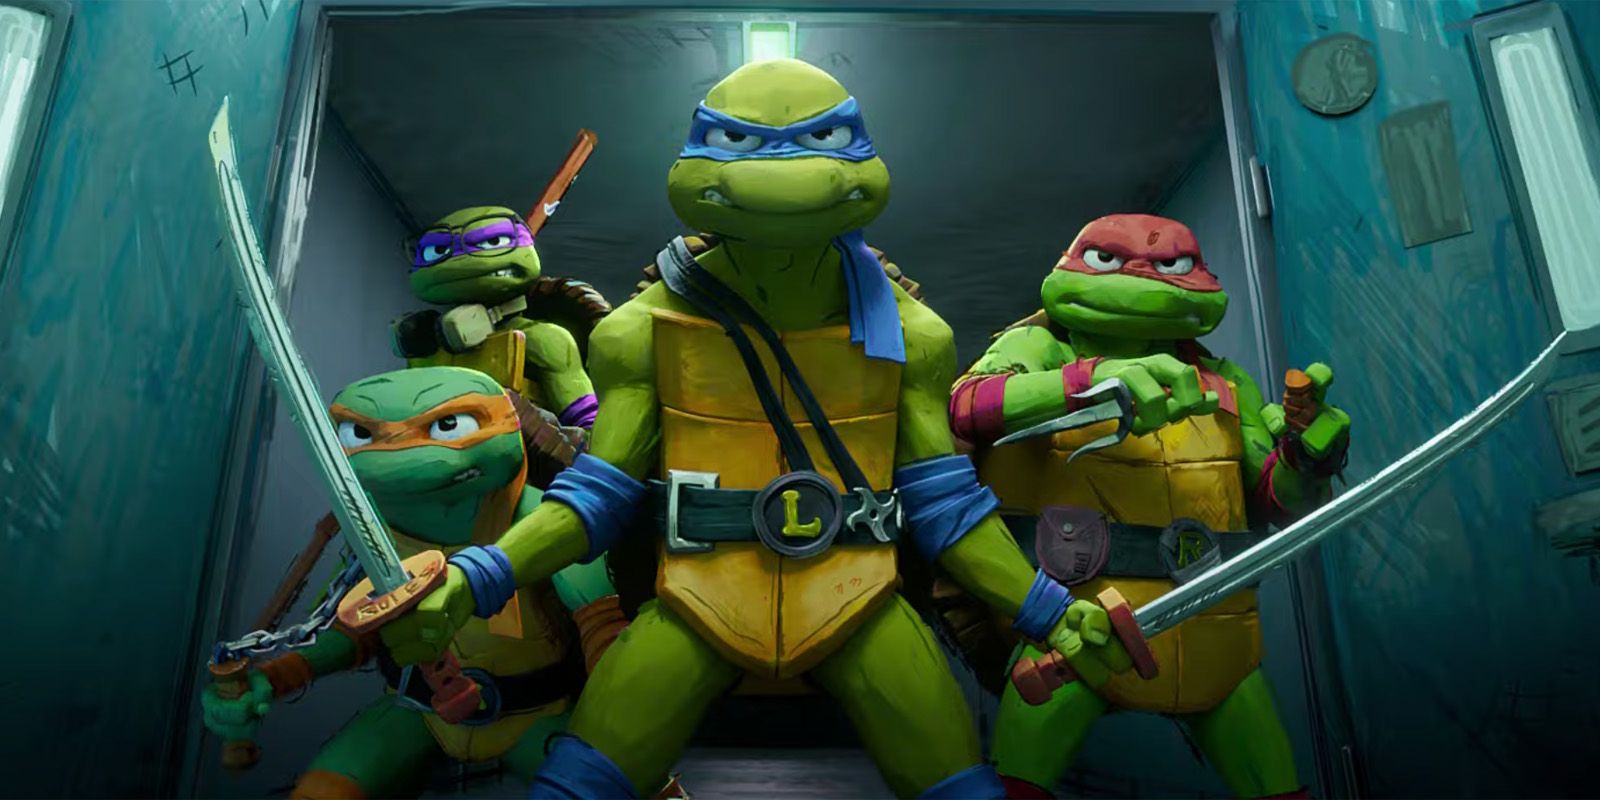 Teenage Mutant Ninja Turtles: Mutant Mayhem' Beginning September 19th On  Paramount+